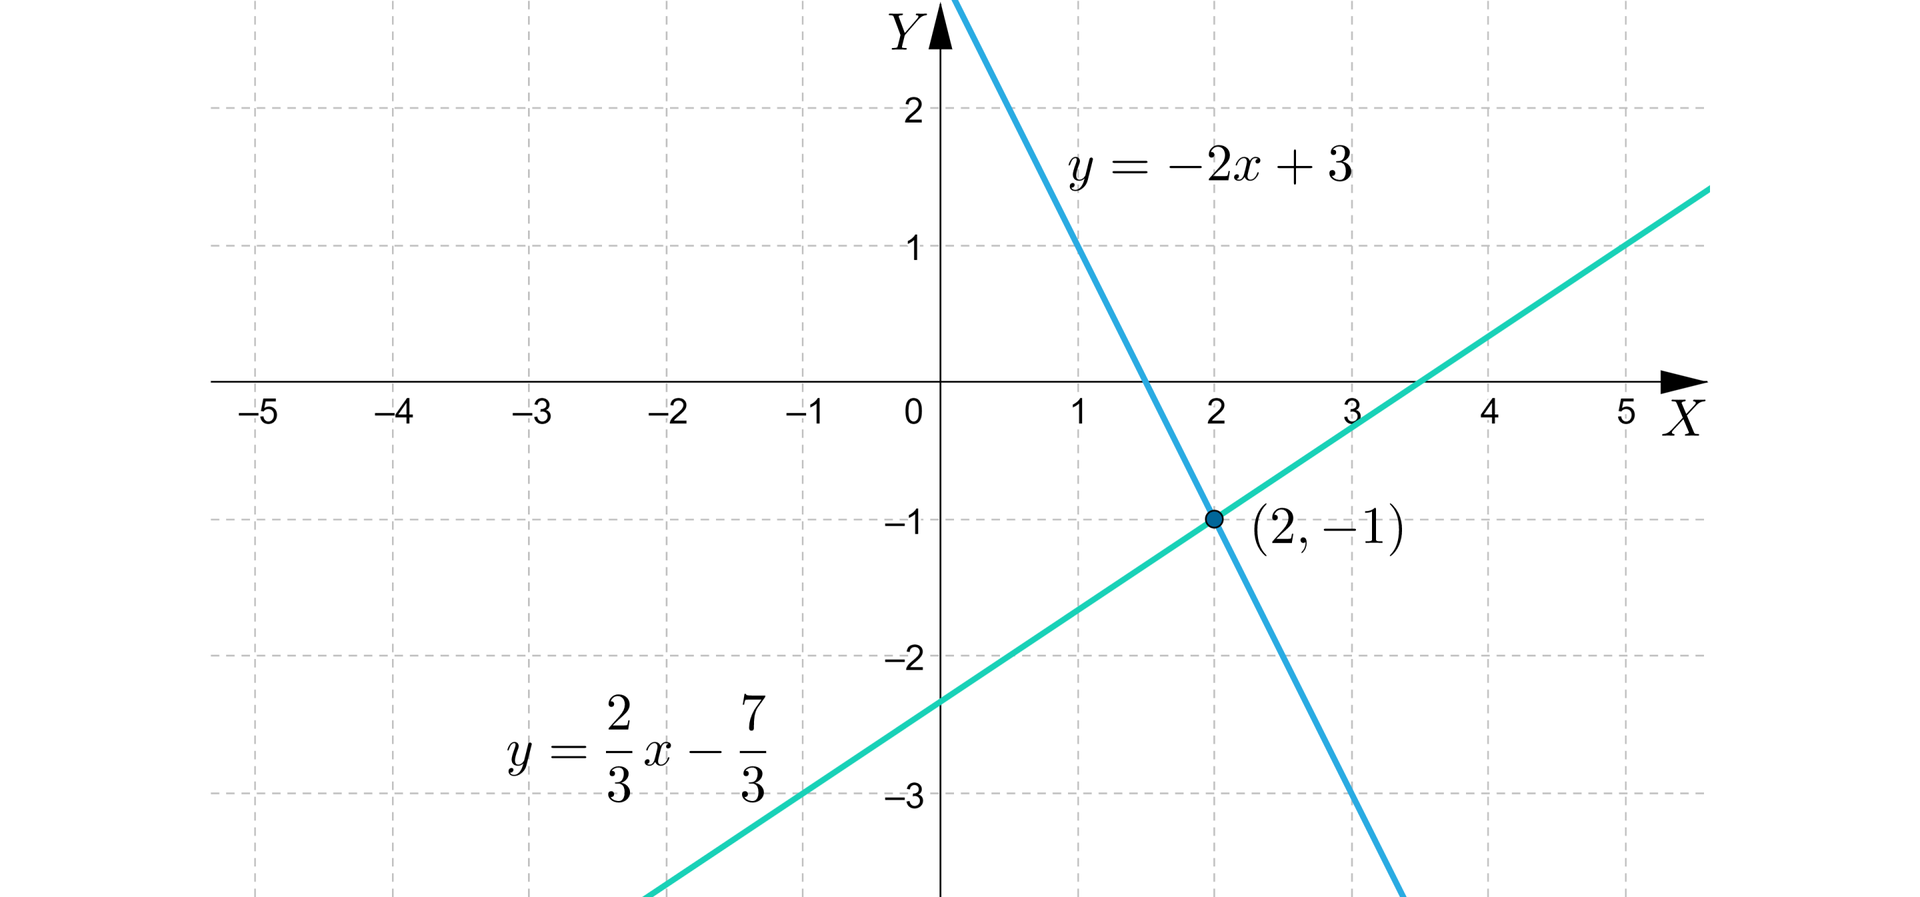 Ilustracja przedstawia układ współrzędnych z poziomą osią X od minus pięciu do pięciu oraz z osią Y od minus trzech do dwóch. Na płaszczyźnie narysowano dwie ukośne proste. Pierwsza określona wzorem y=23x-73 i przebiega między innymi przez punkty 0,-73 oraz 5,1. Druga prosta określona jest wzorem y=-2x+3 i przebiega między innymi przez punkty 1,1 oraz 3,-3. Proste przecinają się w punkcie 2,-1